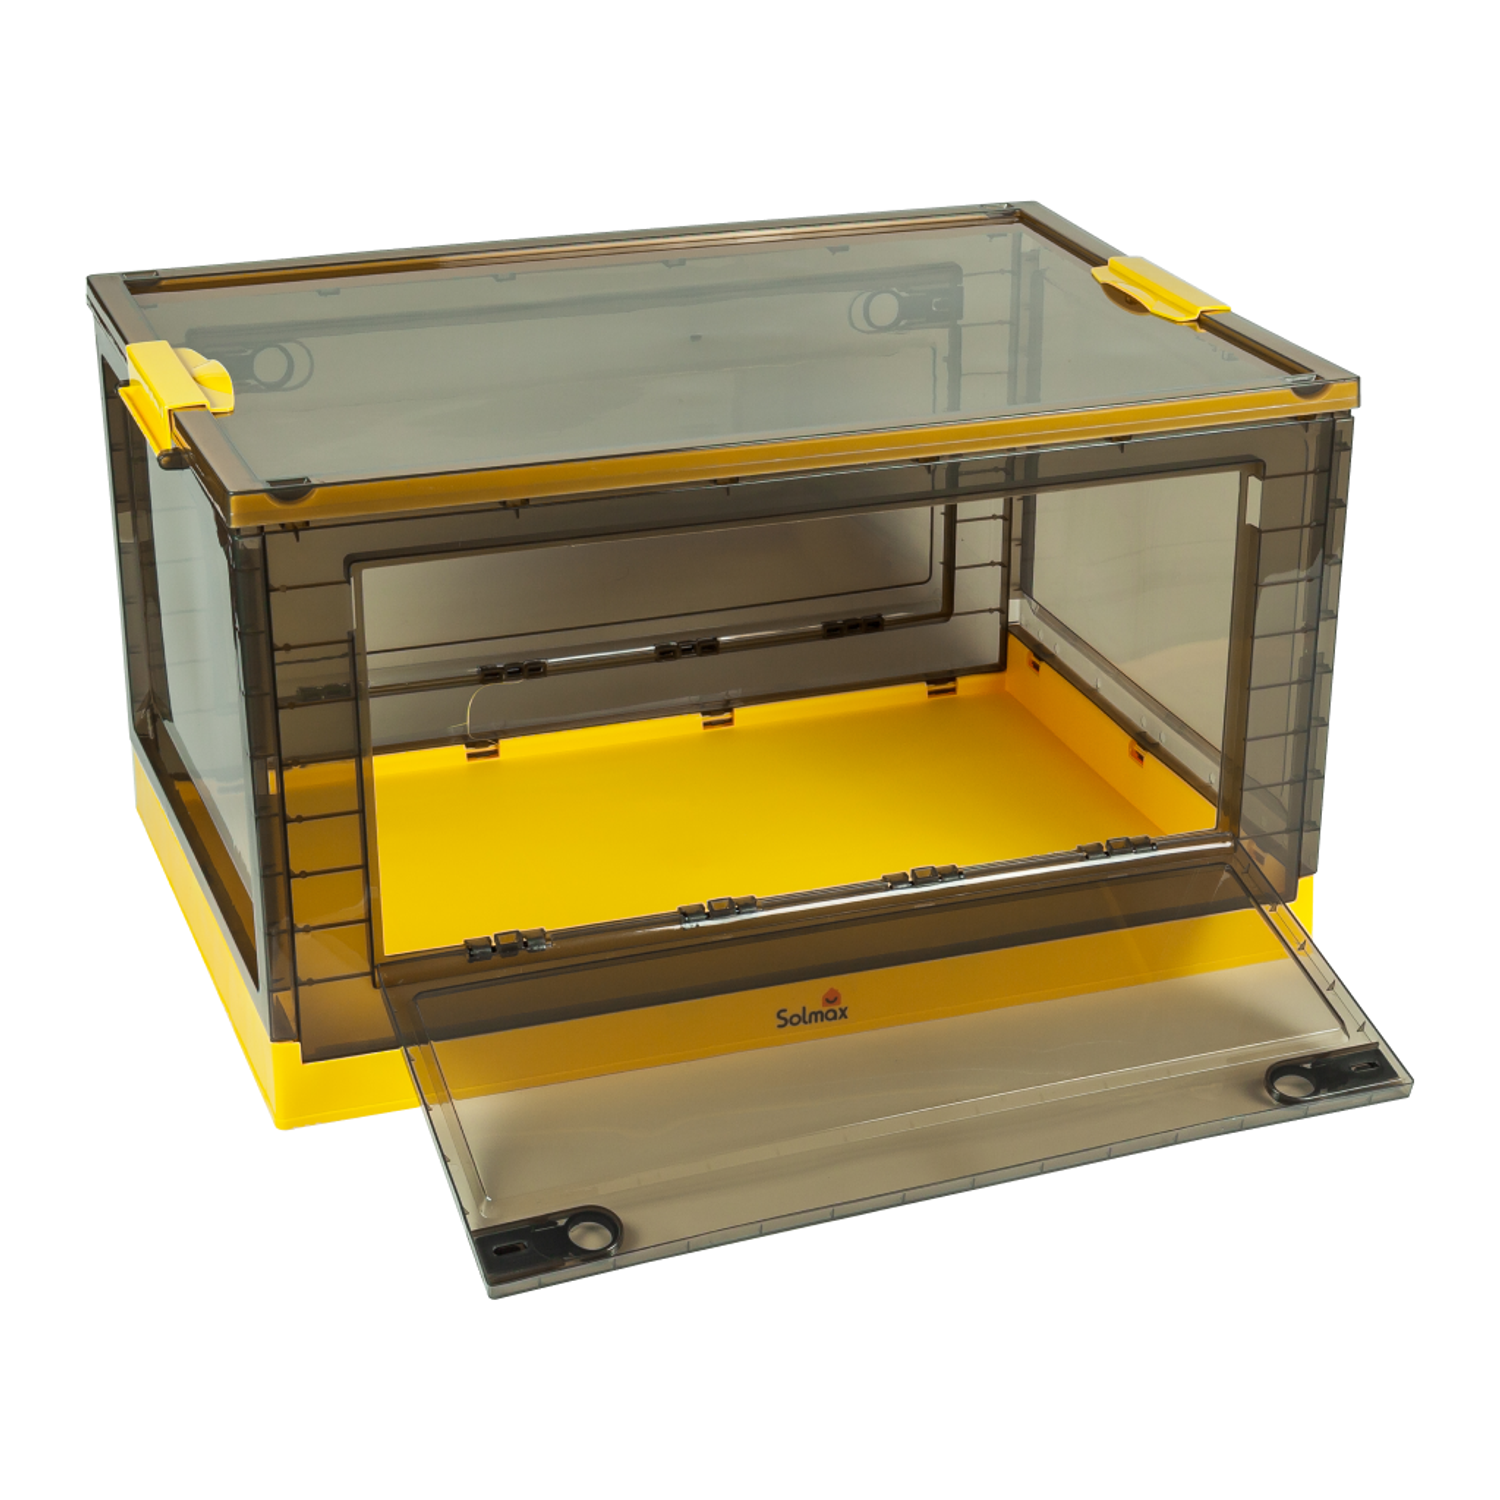 Ящик для хранения вещей Solmax прозрачный контейнер крышкой на колесах 68х47х38 желтый - фото 8